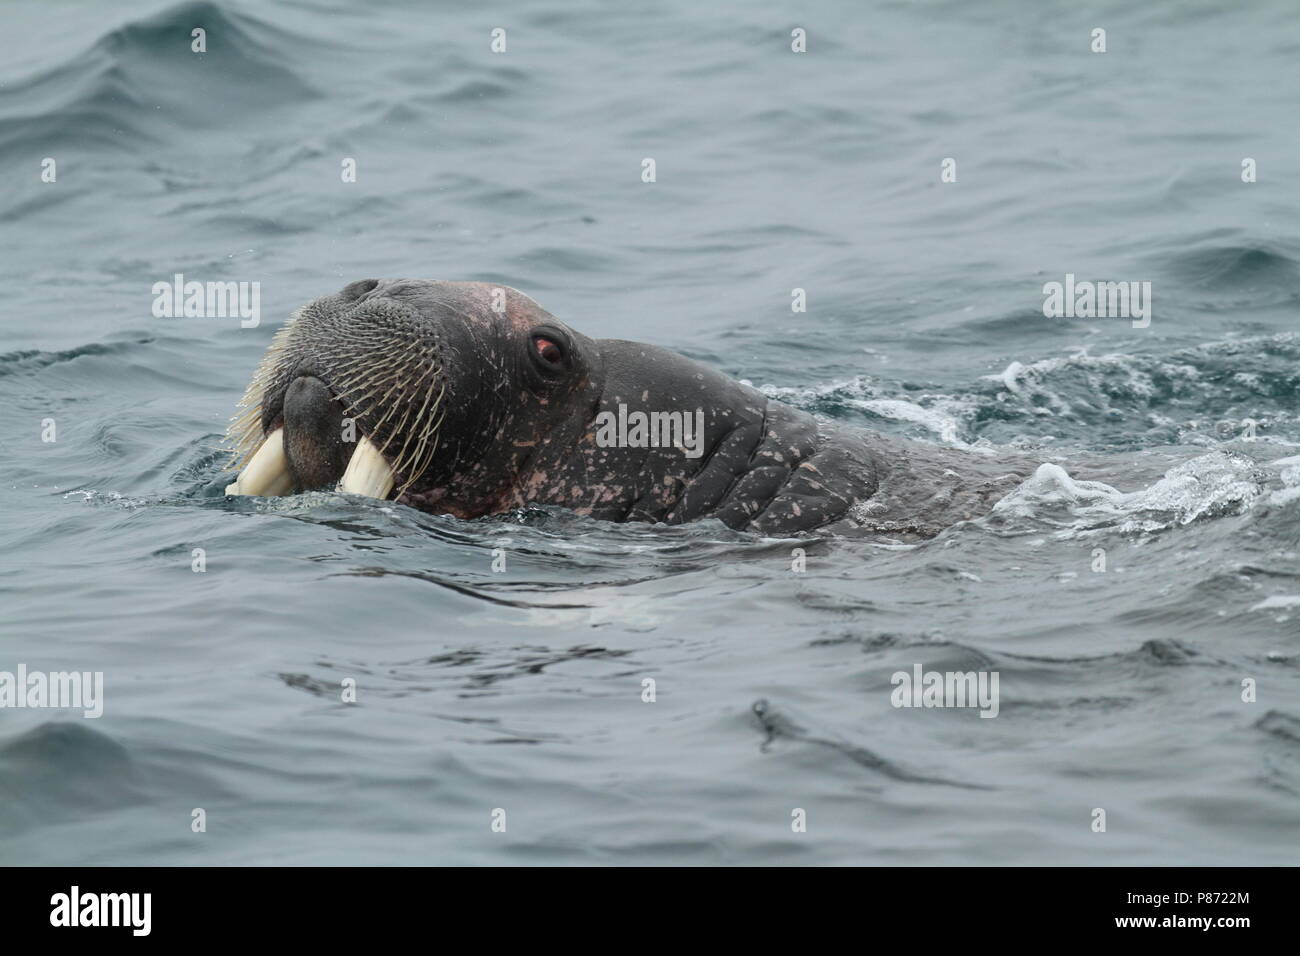 Walrusen in de zee; Walruss's at sea Stock Photo